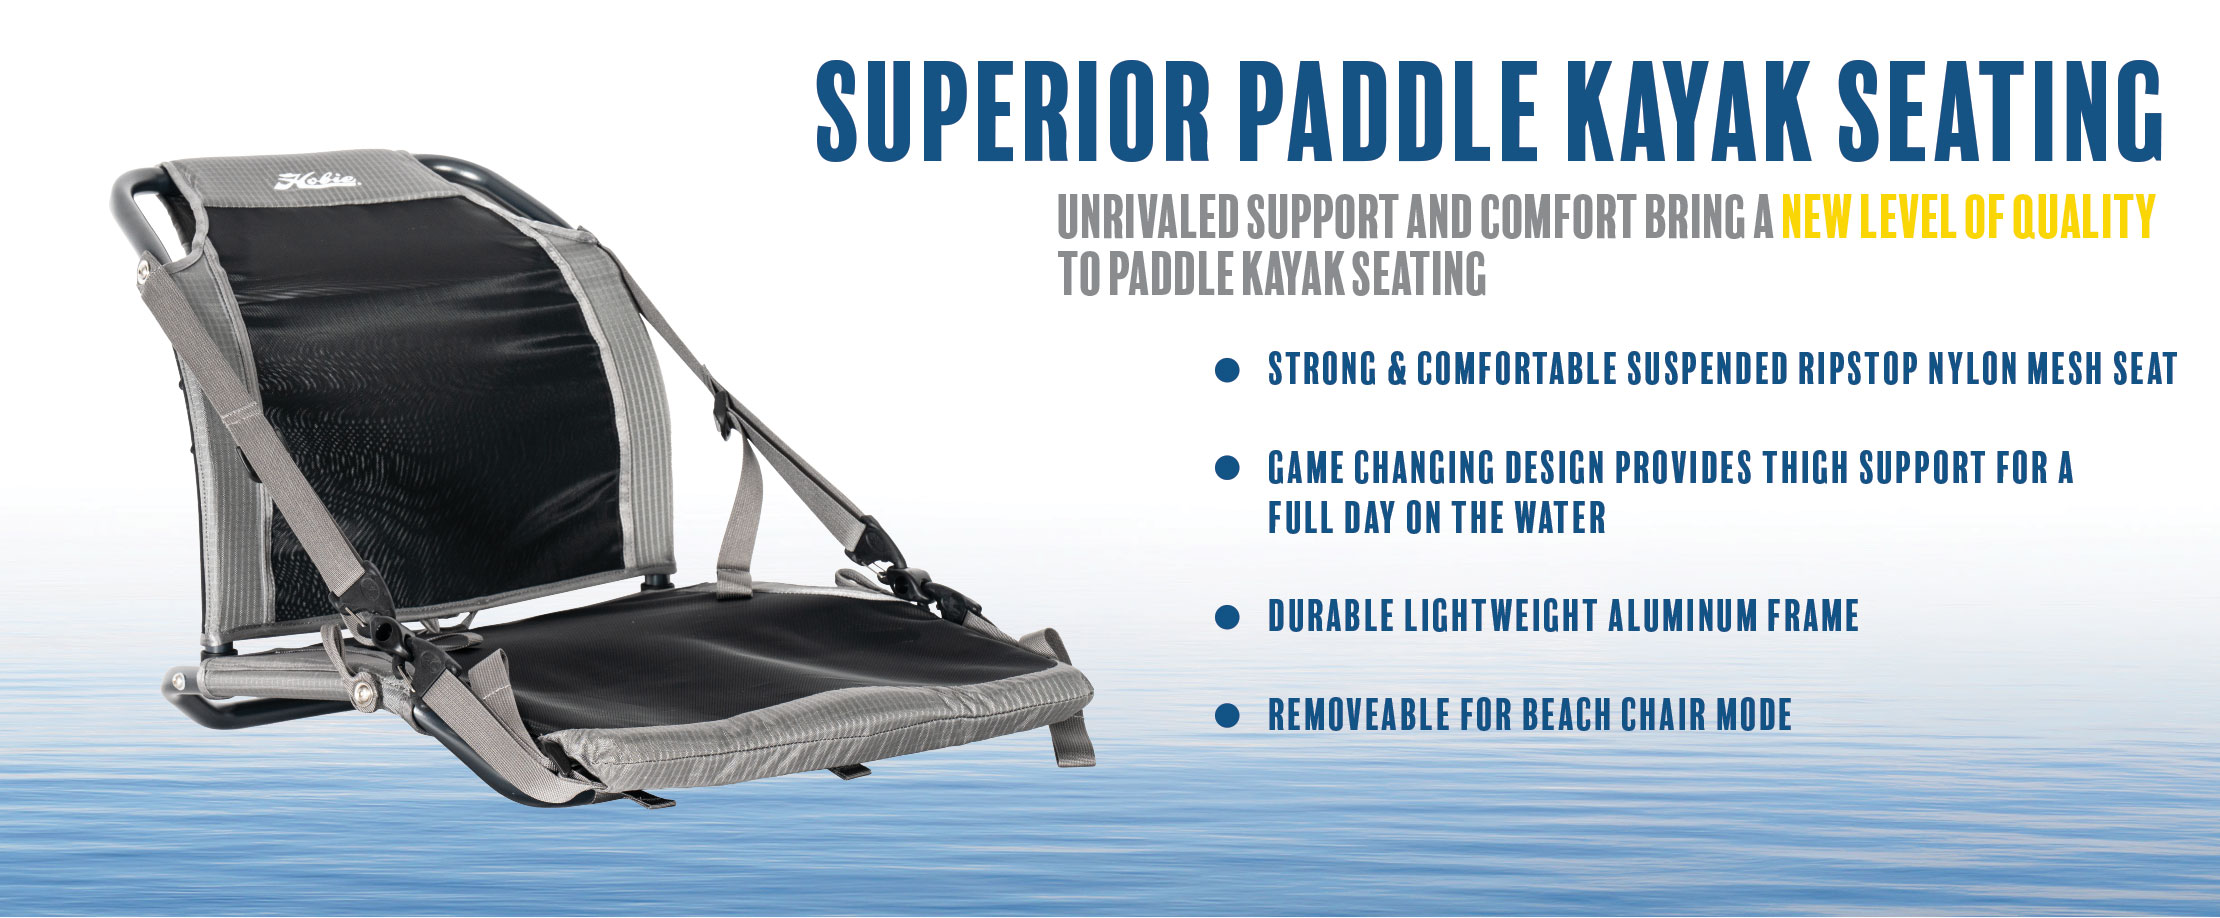 Paddle Kayak Seating